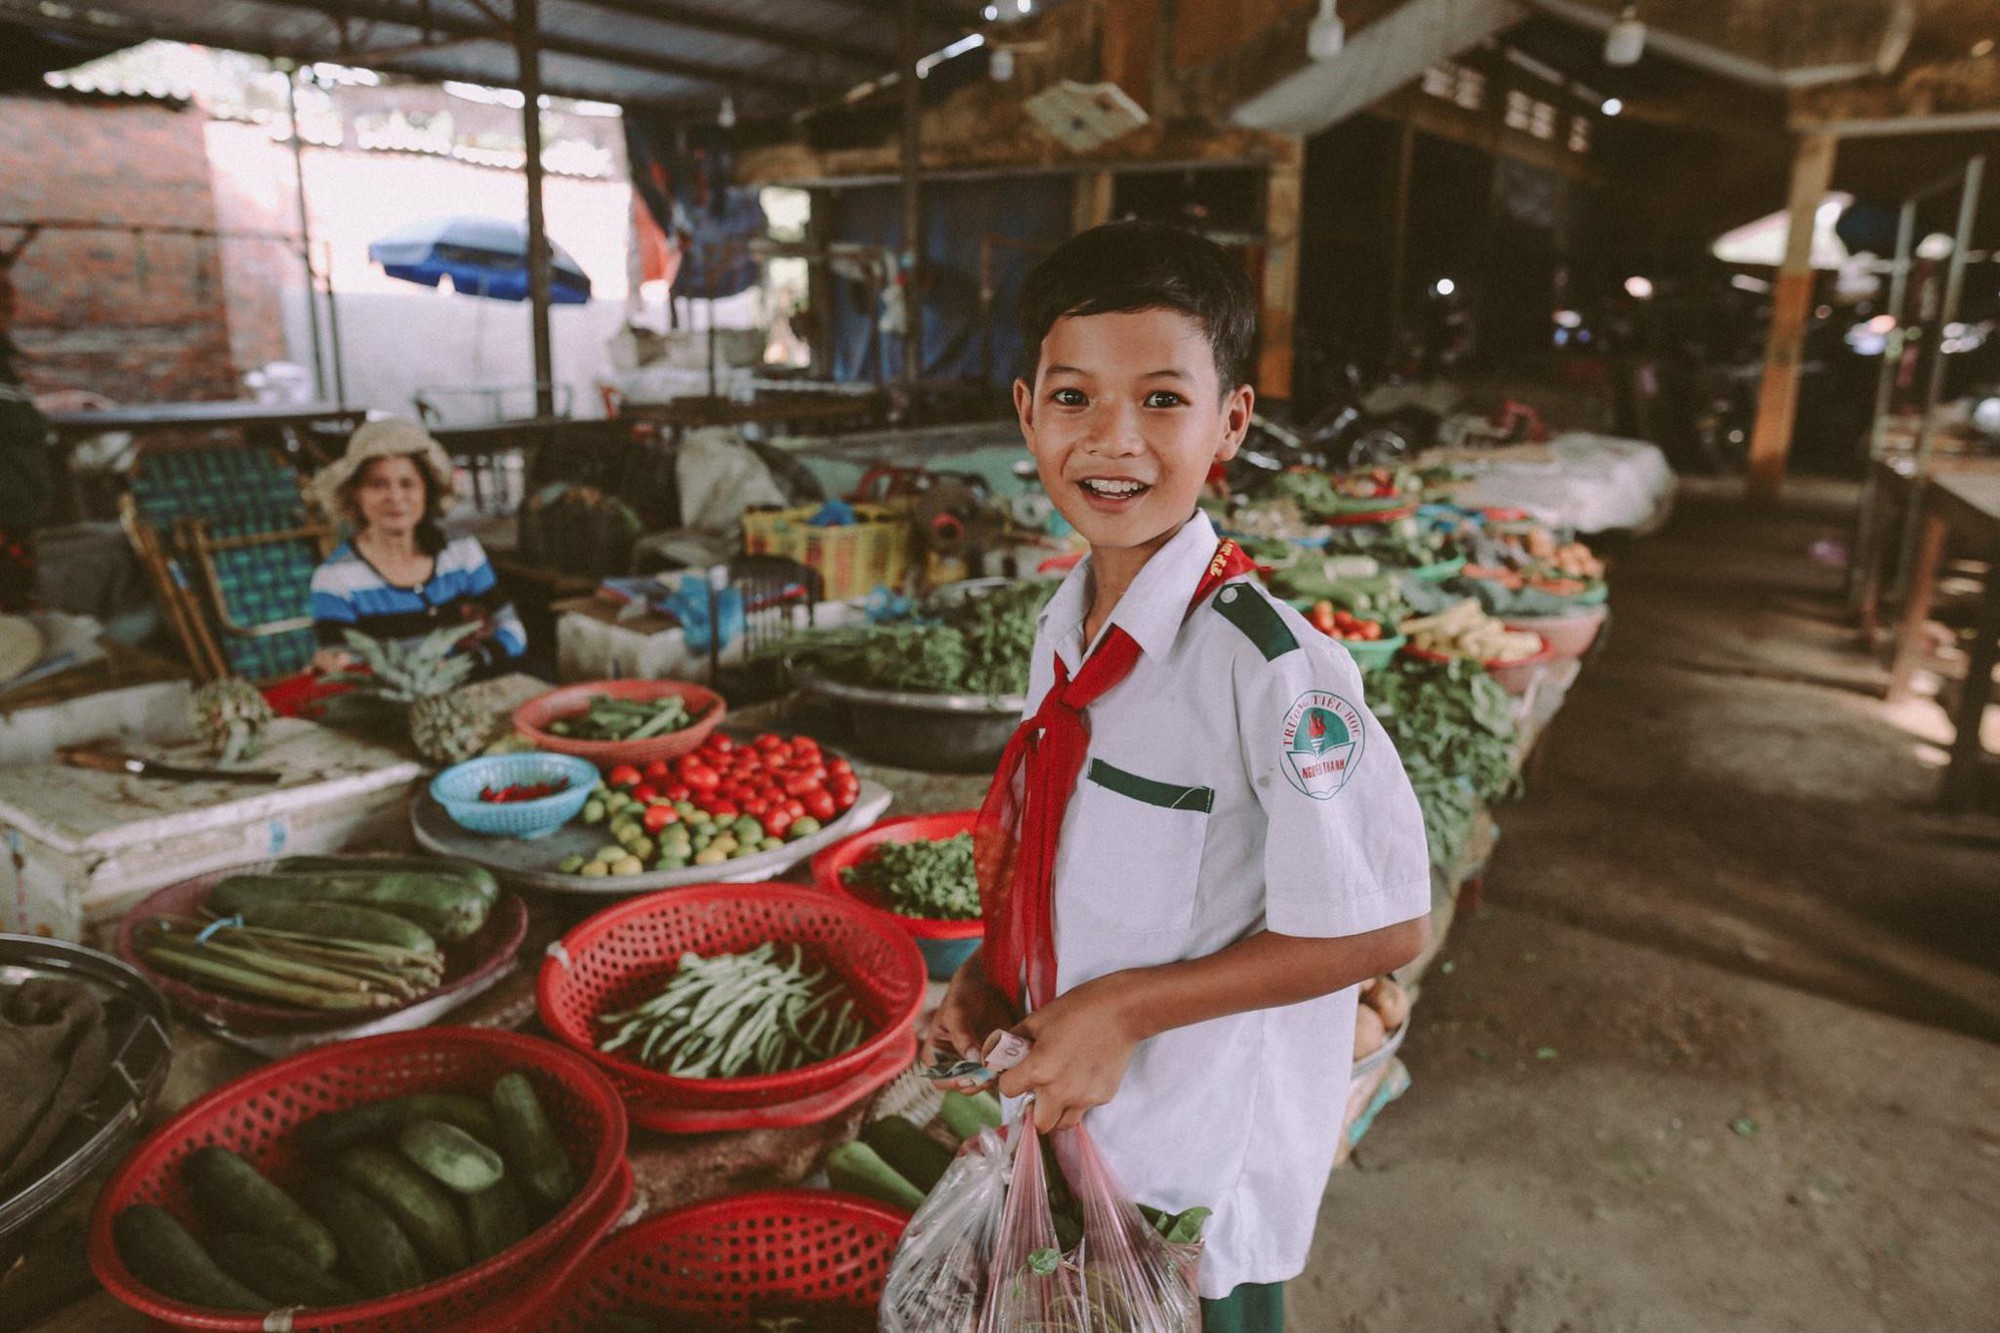 Bộ ảnh xúc động về cậu bé mồ côi ở Quảng Nam tự lập từ năm 12 tuổi, nuôi lợn để được đến trường - Ảnh 11.